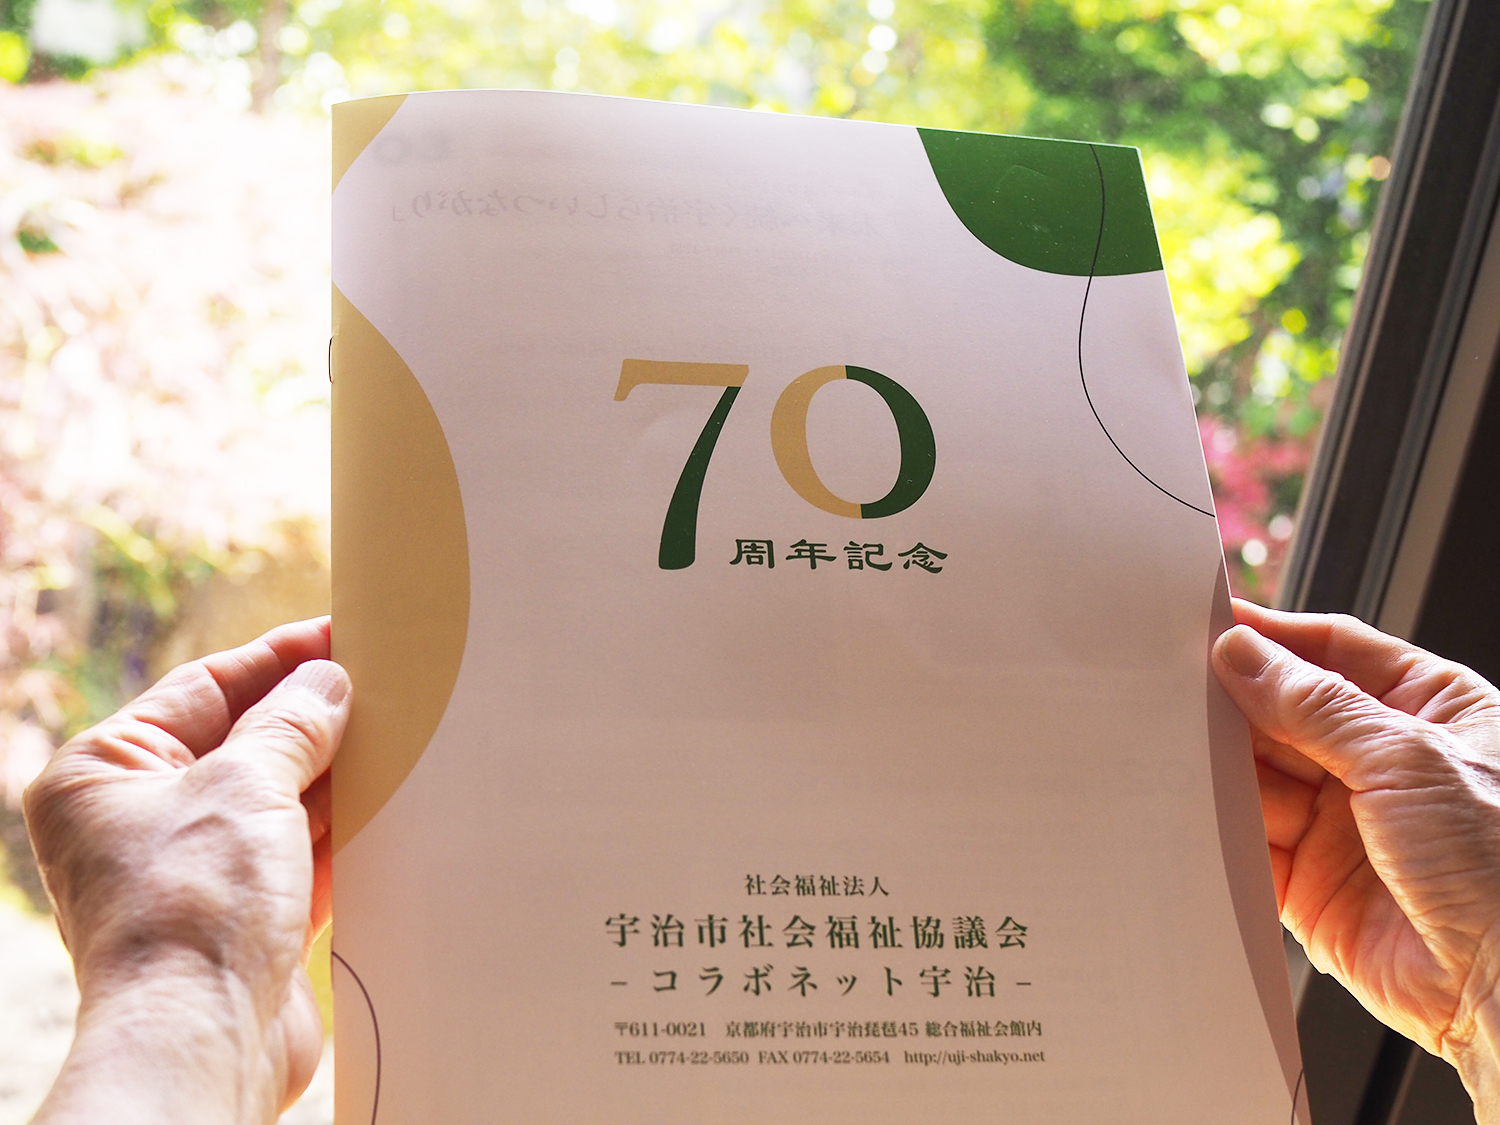 宇治社会福祉協議会70周年記念パンフレット